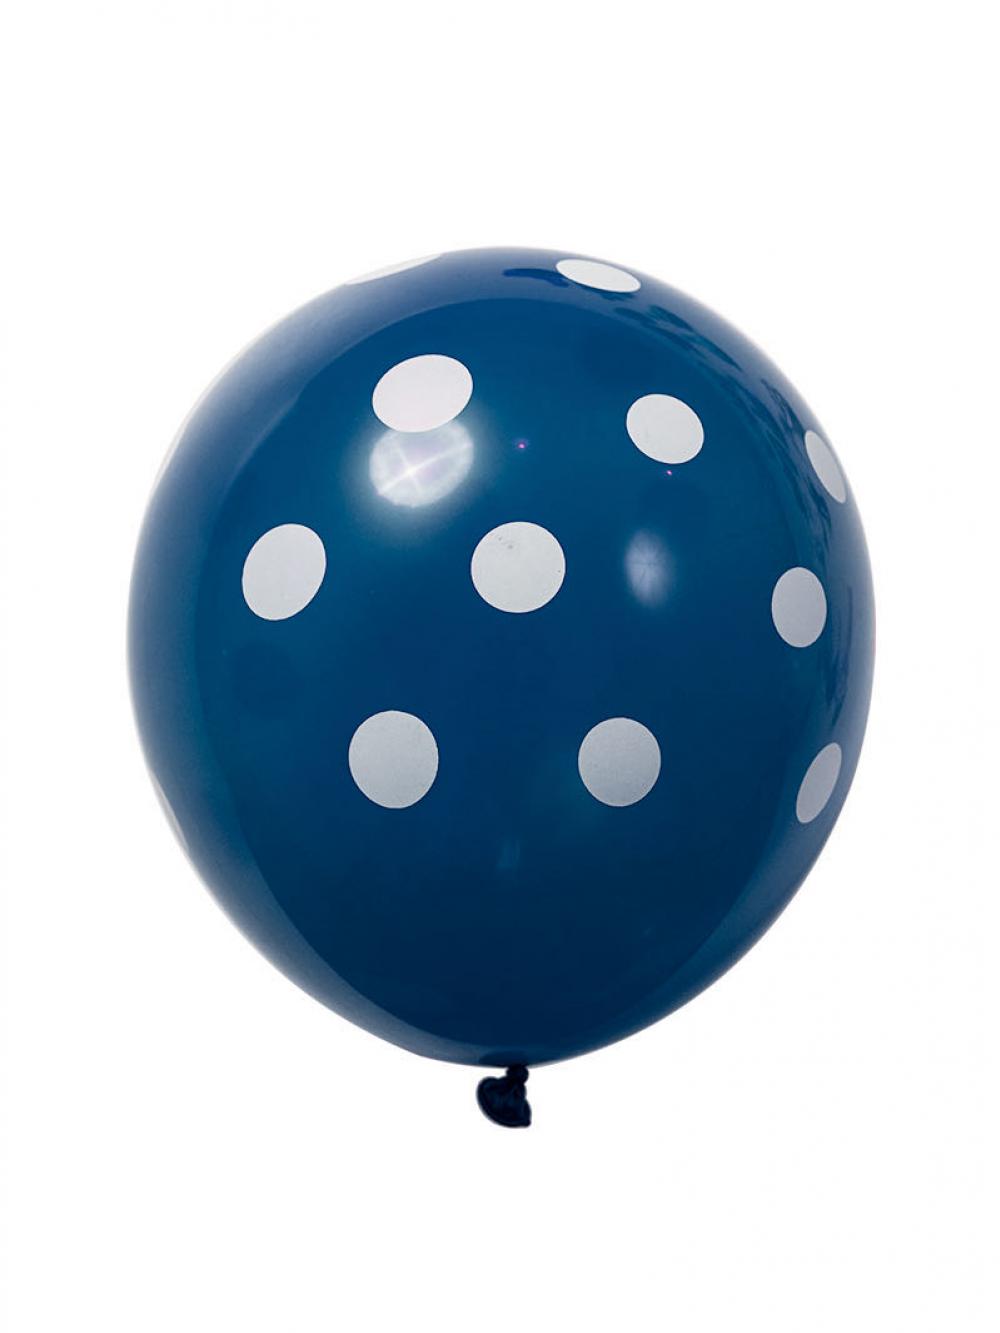 12 Inch Standard Polka Dot Balloons Royal Balloon White Dot (100PCS)